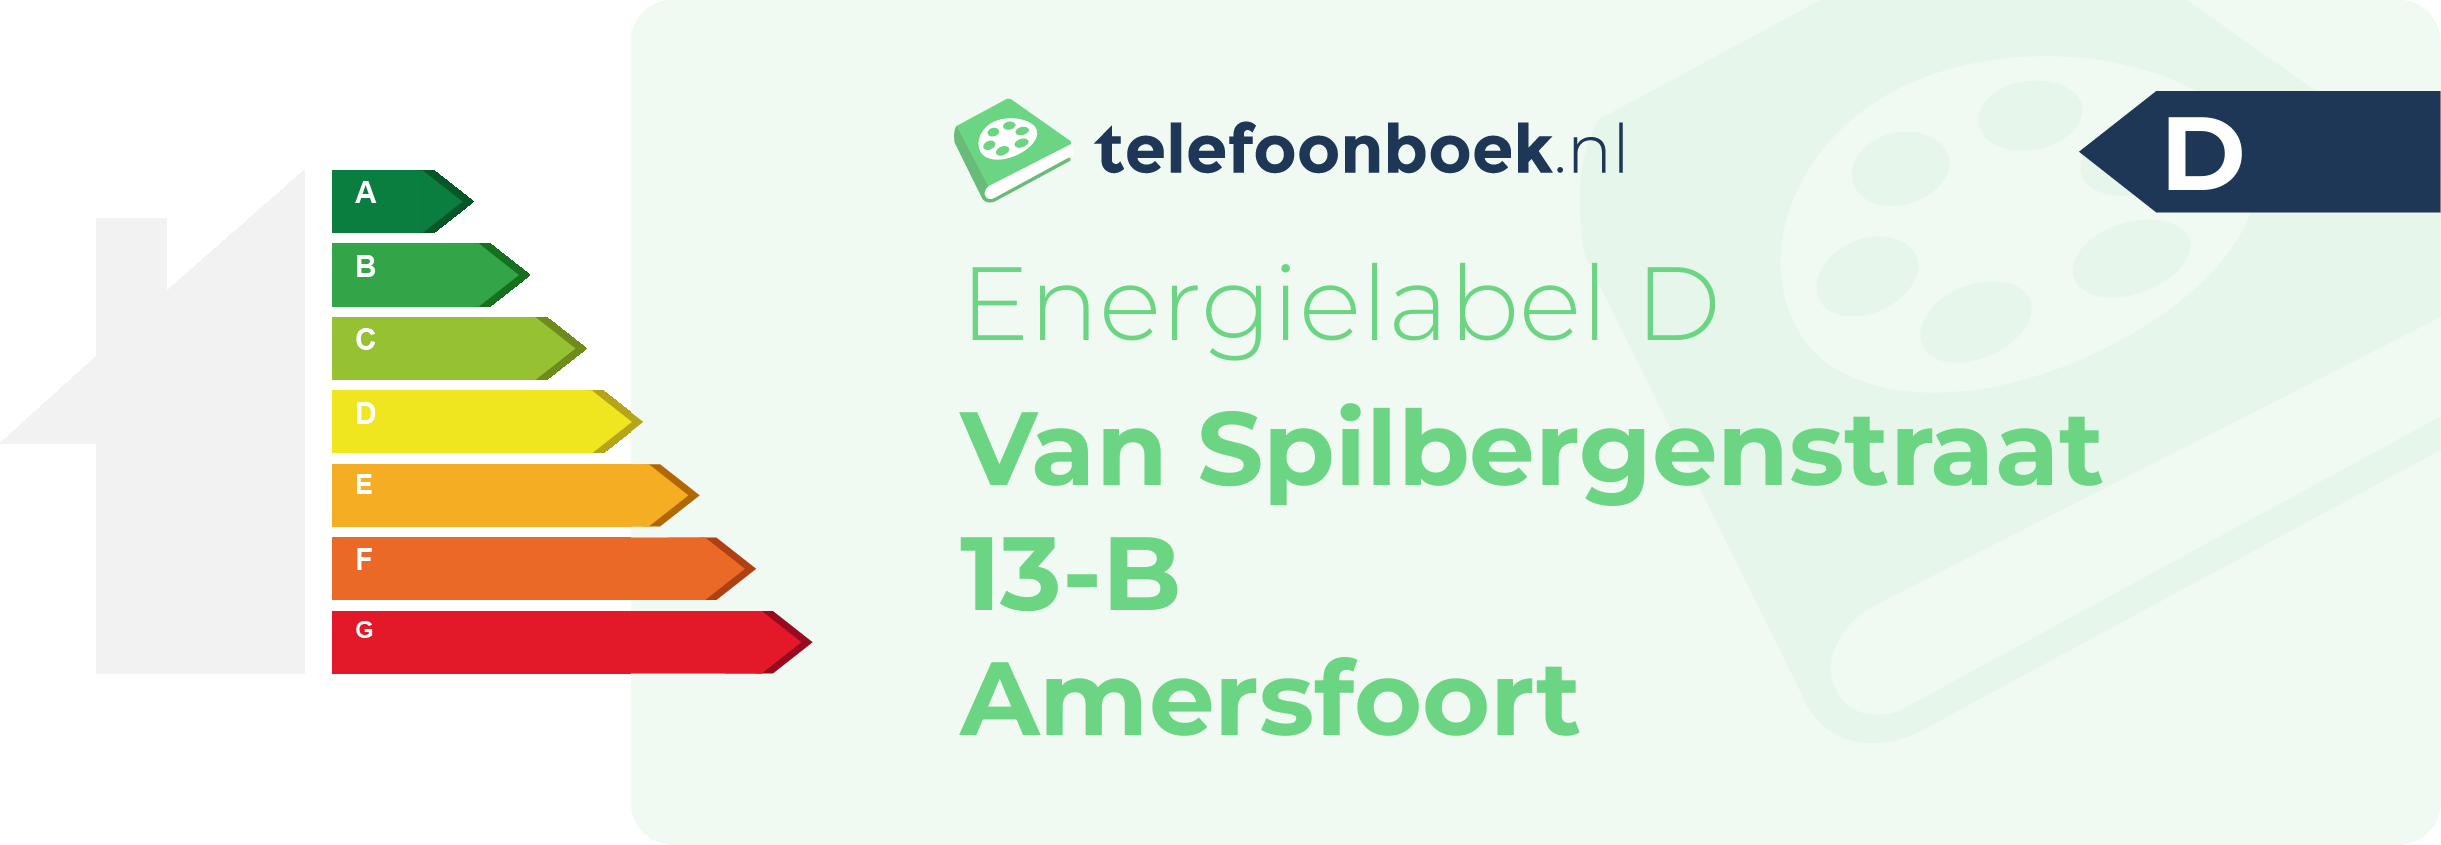 Energielabel Van Spilbergenstraat 13-B Amersfoort